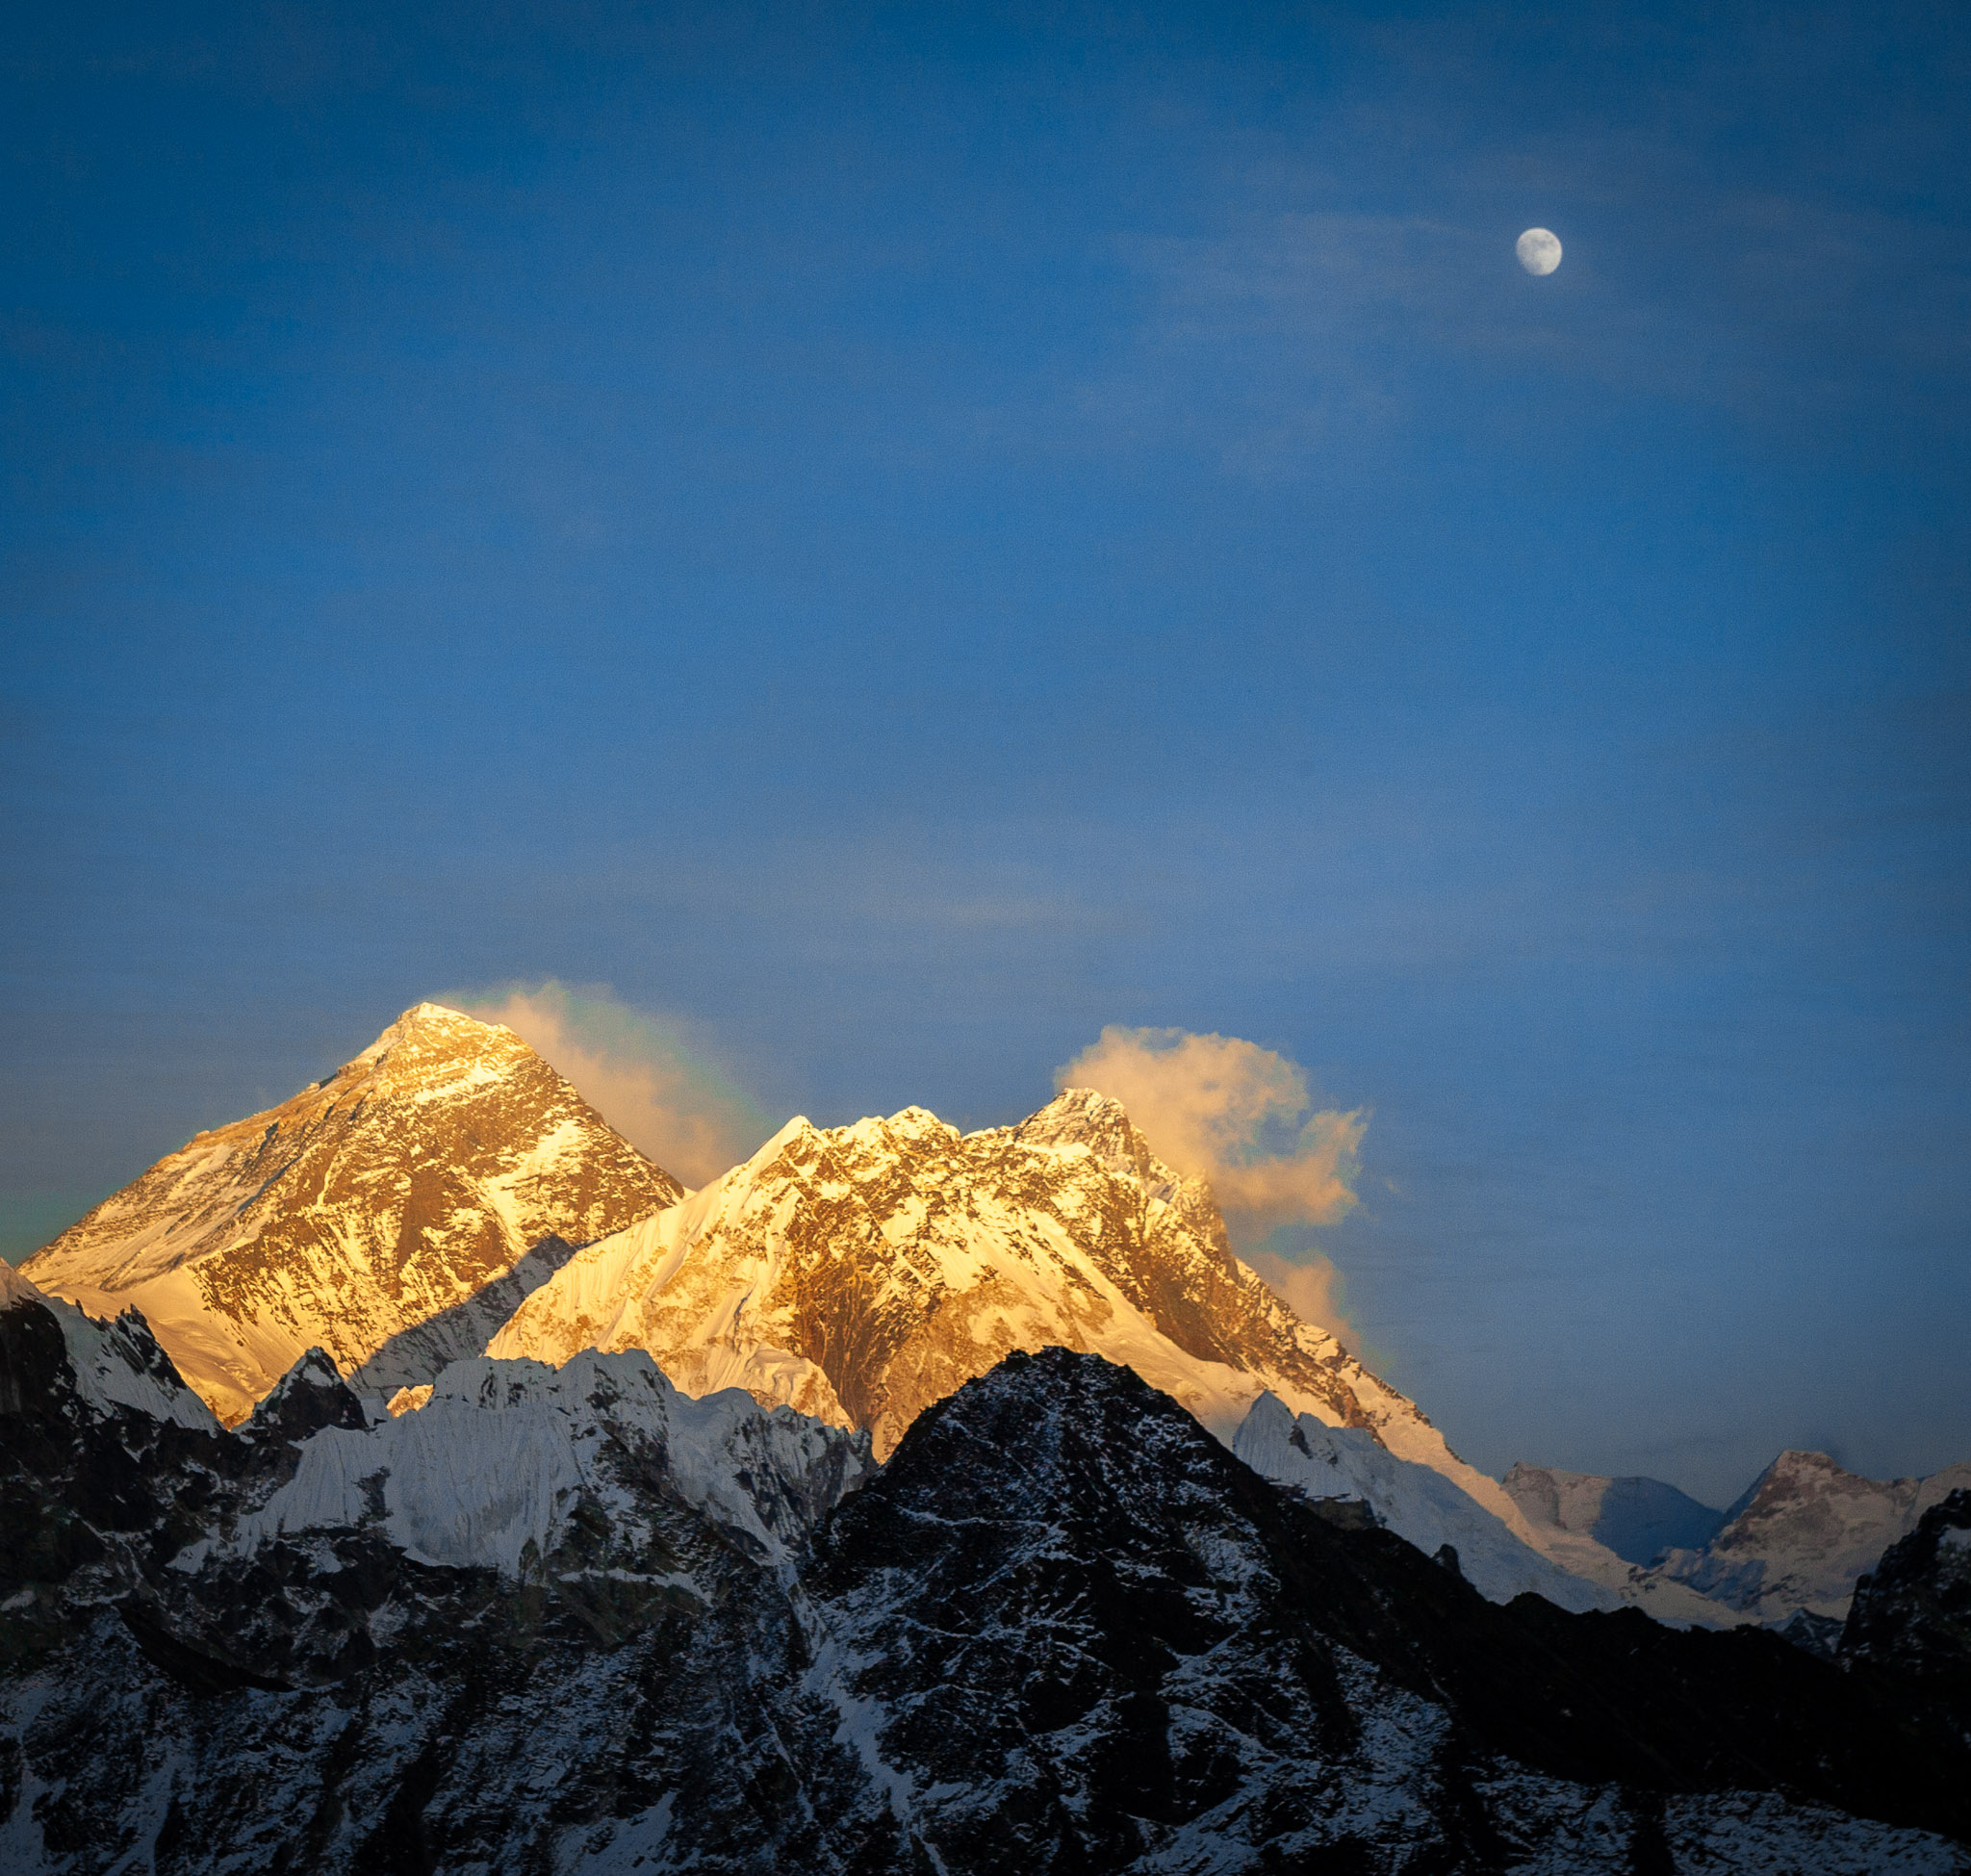 Sunset & moonrise over Everest